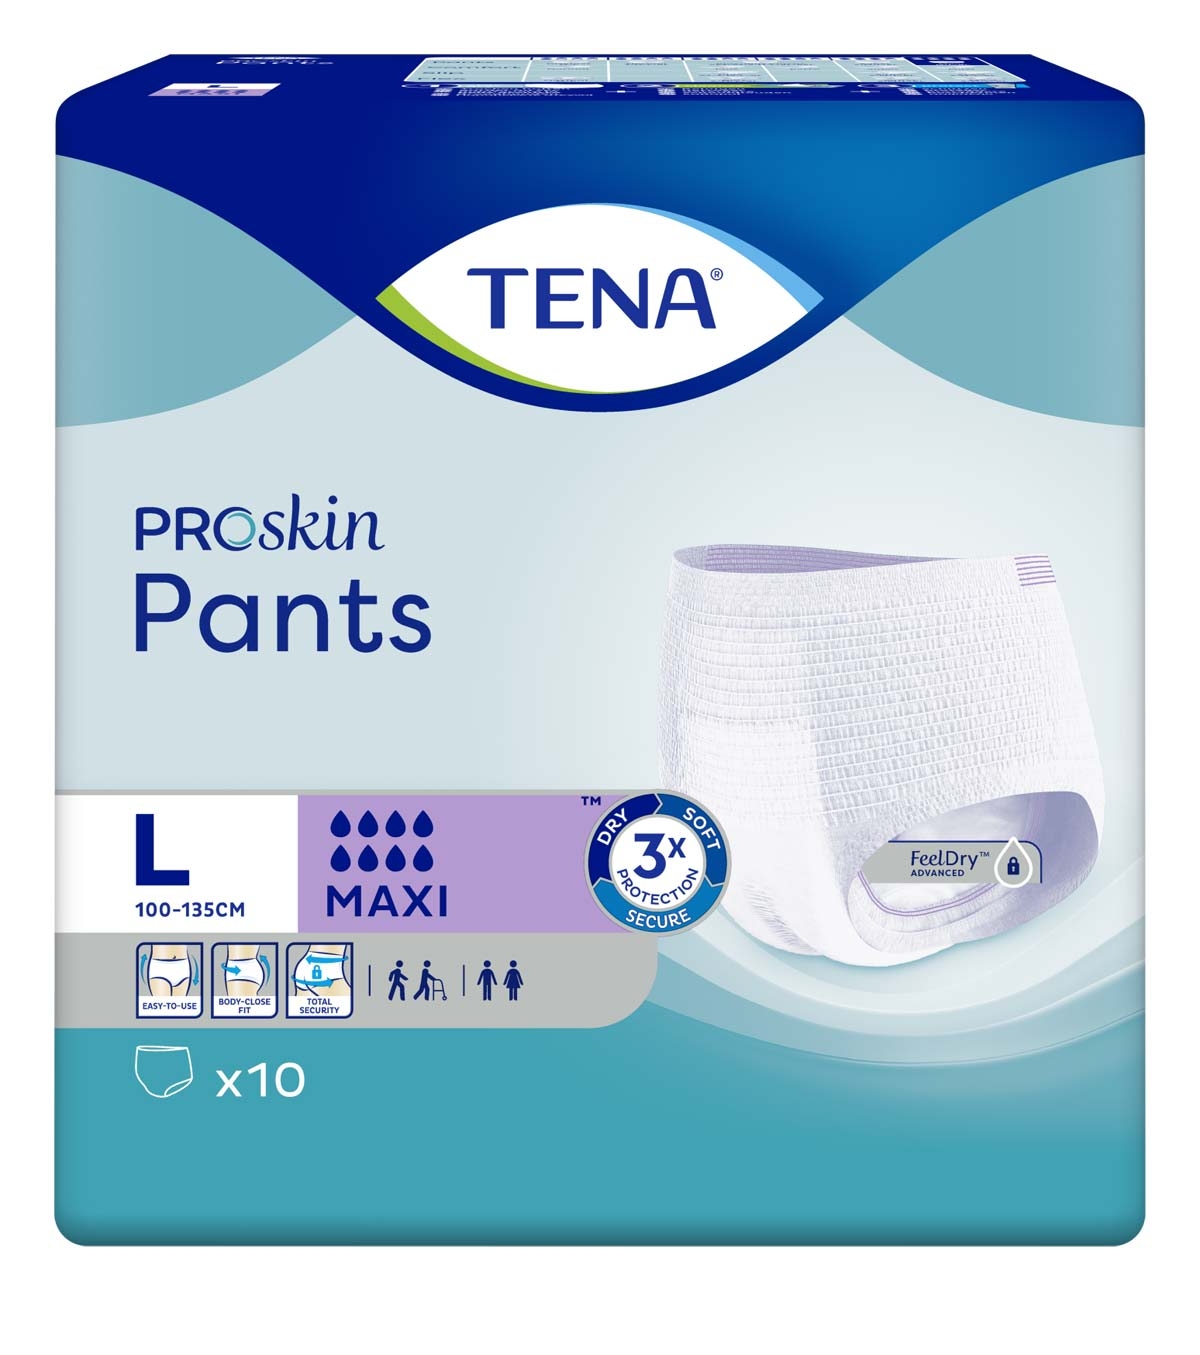 TENA Pants MAXI - extra saugstark - Large (L) - 10 Stück Packung